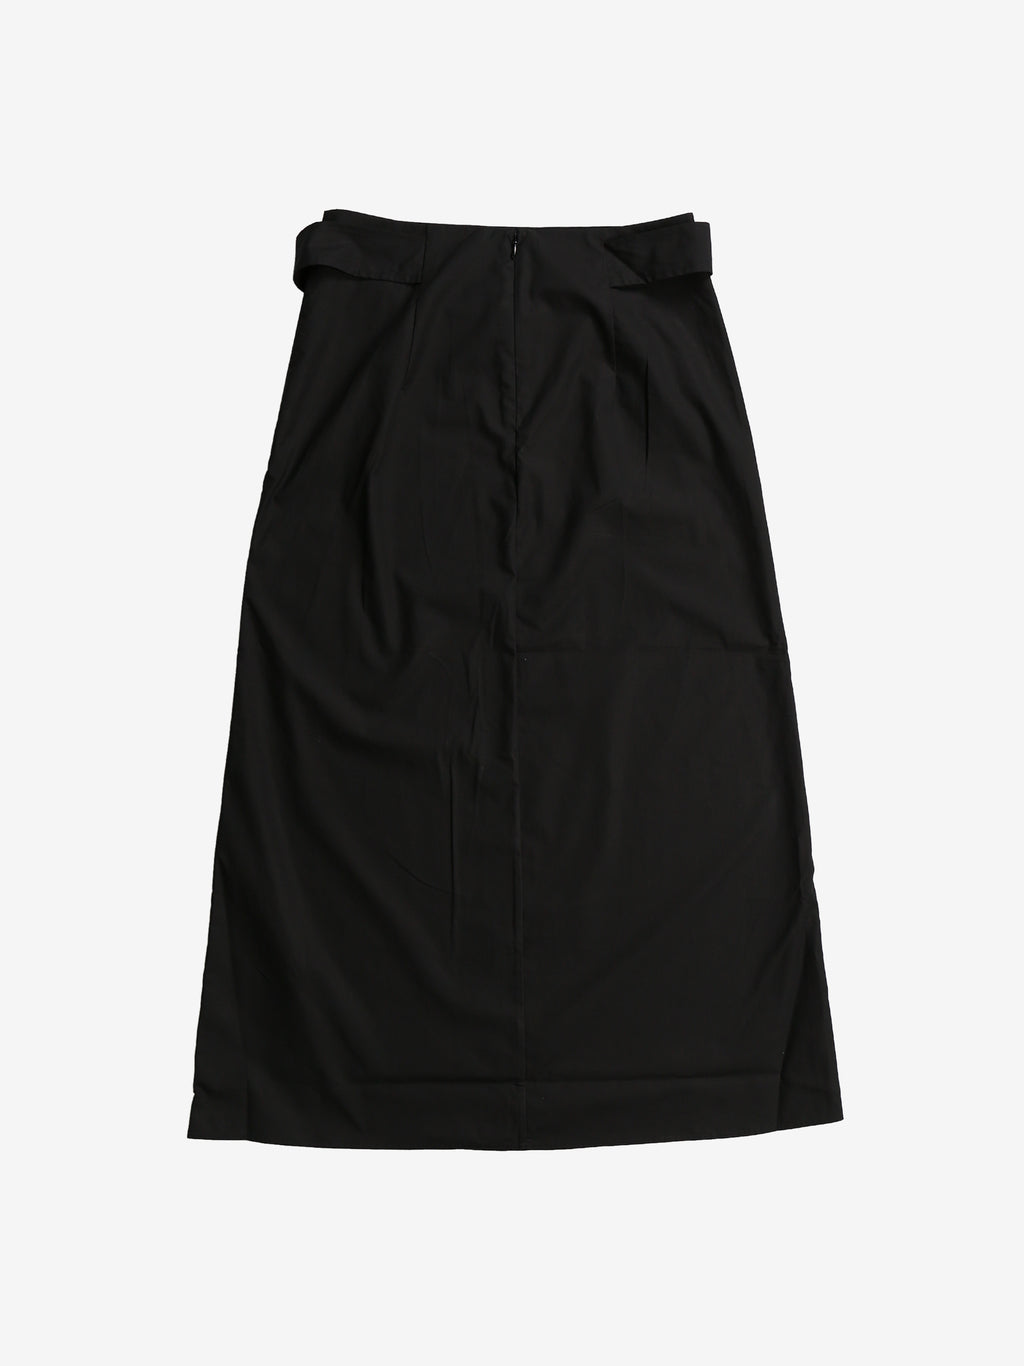 TOTEME Women Tie-Waist Cotton Skirt